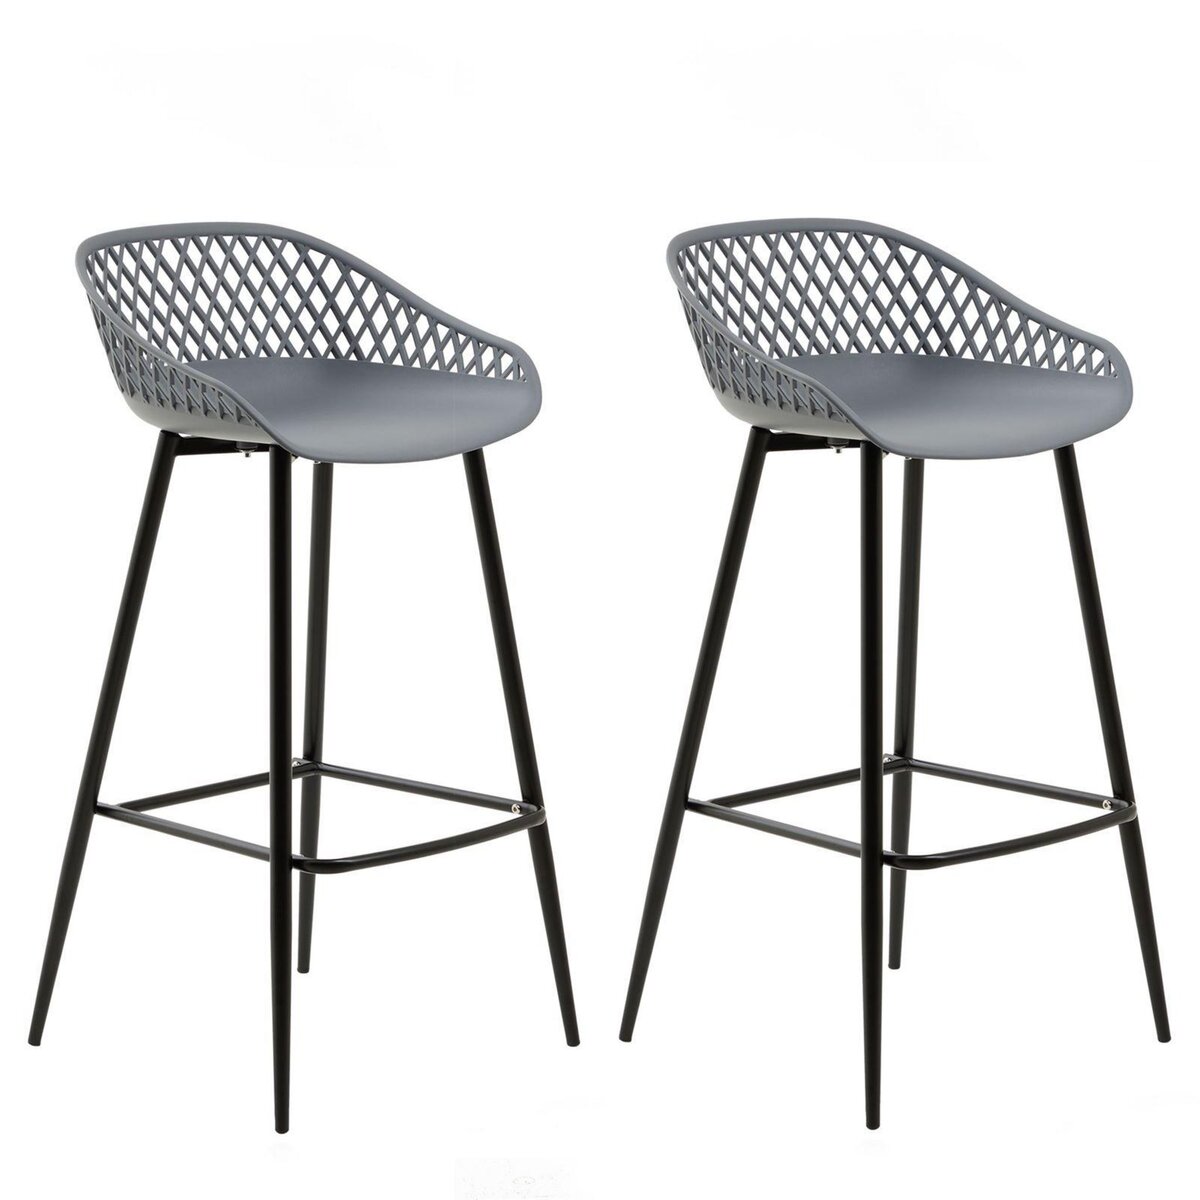 IDIMEX Lot de 2 tabourets de bar IREK chaise haute pour cuisine ou comptoir au design retro, en plastique gris anthracite et métal noir